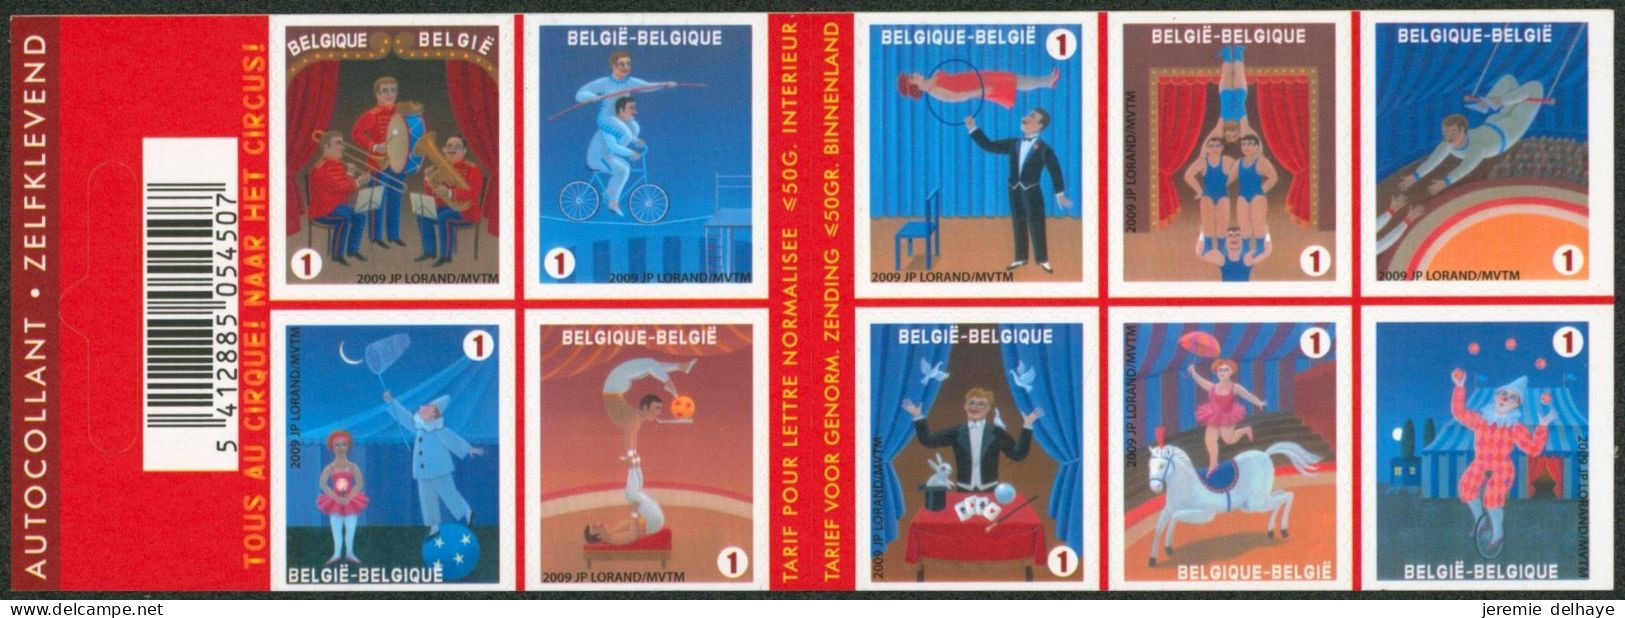 Carnet (2009) - B105** (MNH) Carnet De 10 Timbres Sur Le Cirque / Circus. - 1997-… Validité Permanente [B]